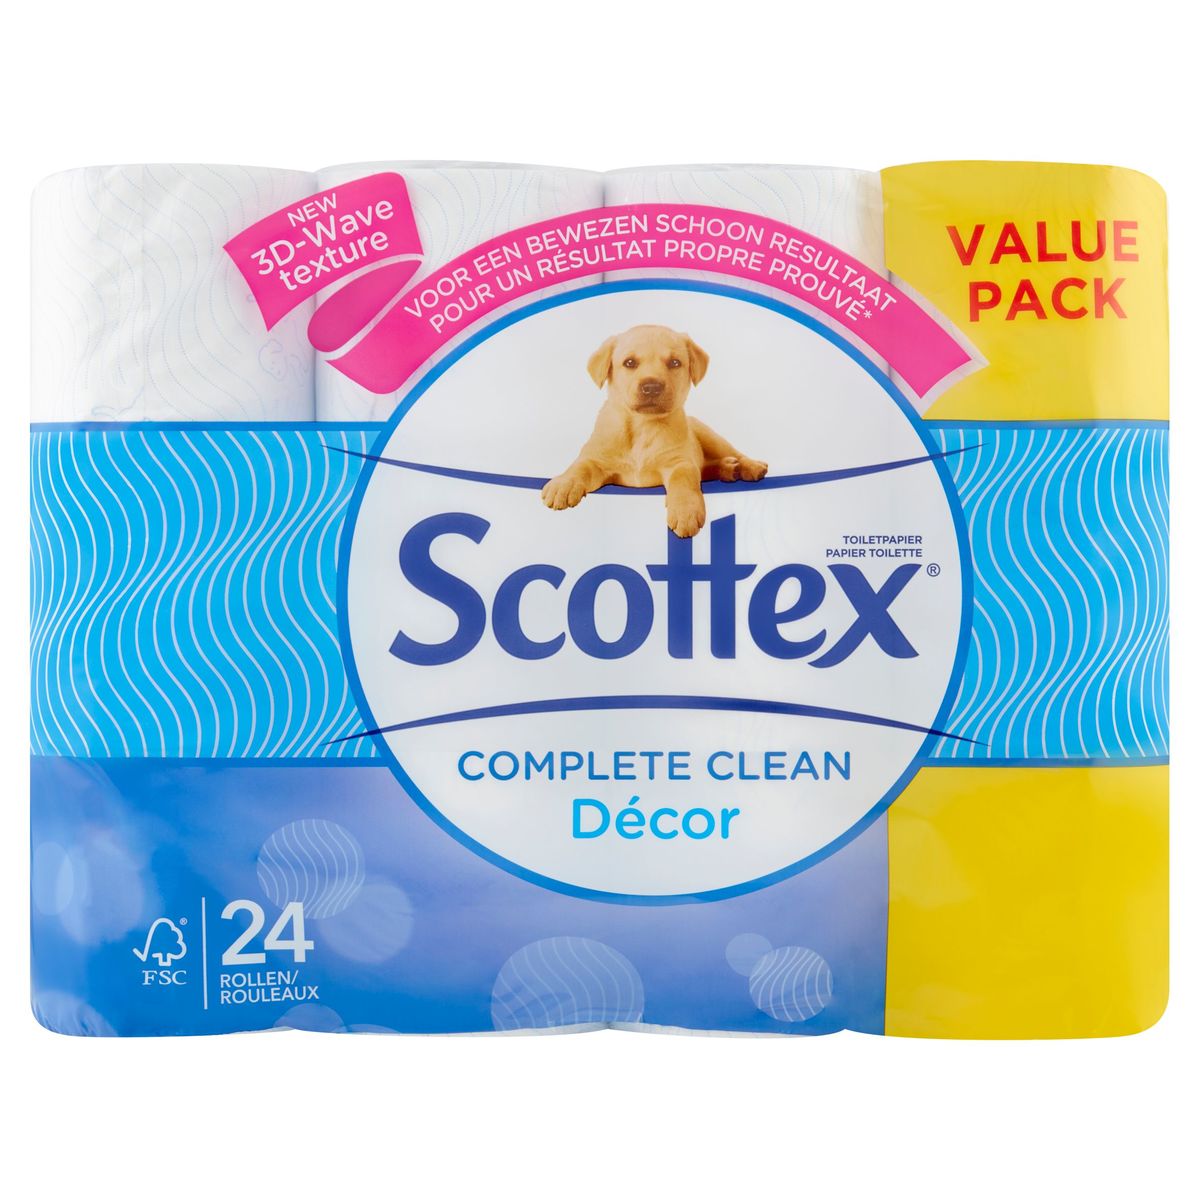 Scottex Complete Clean Décor Toiletpapier Value Pack 24 Rollen